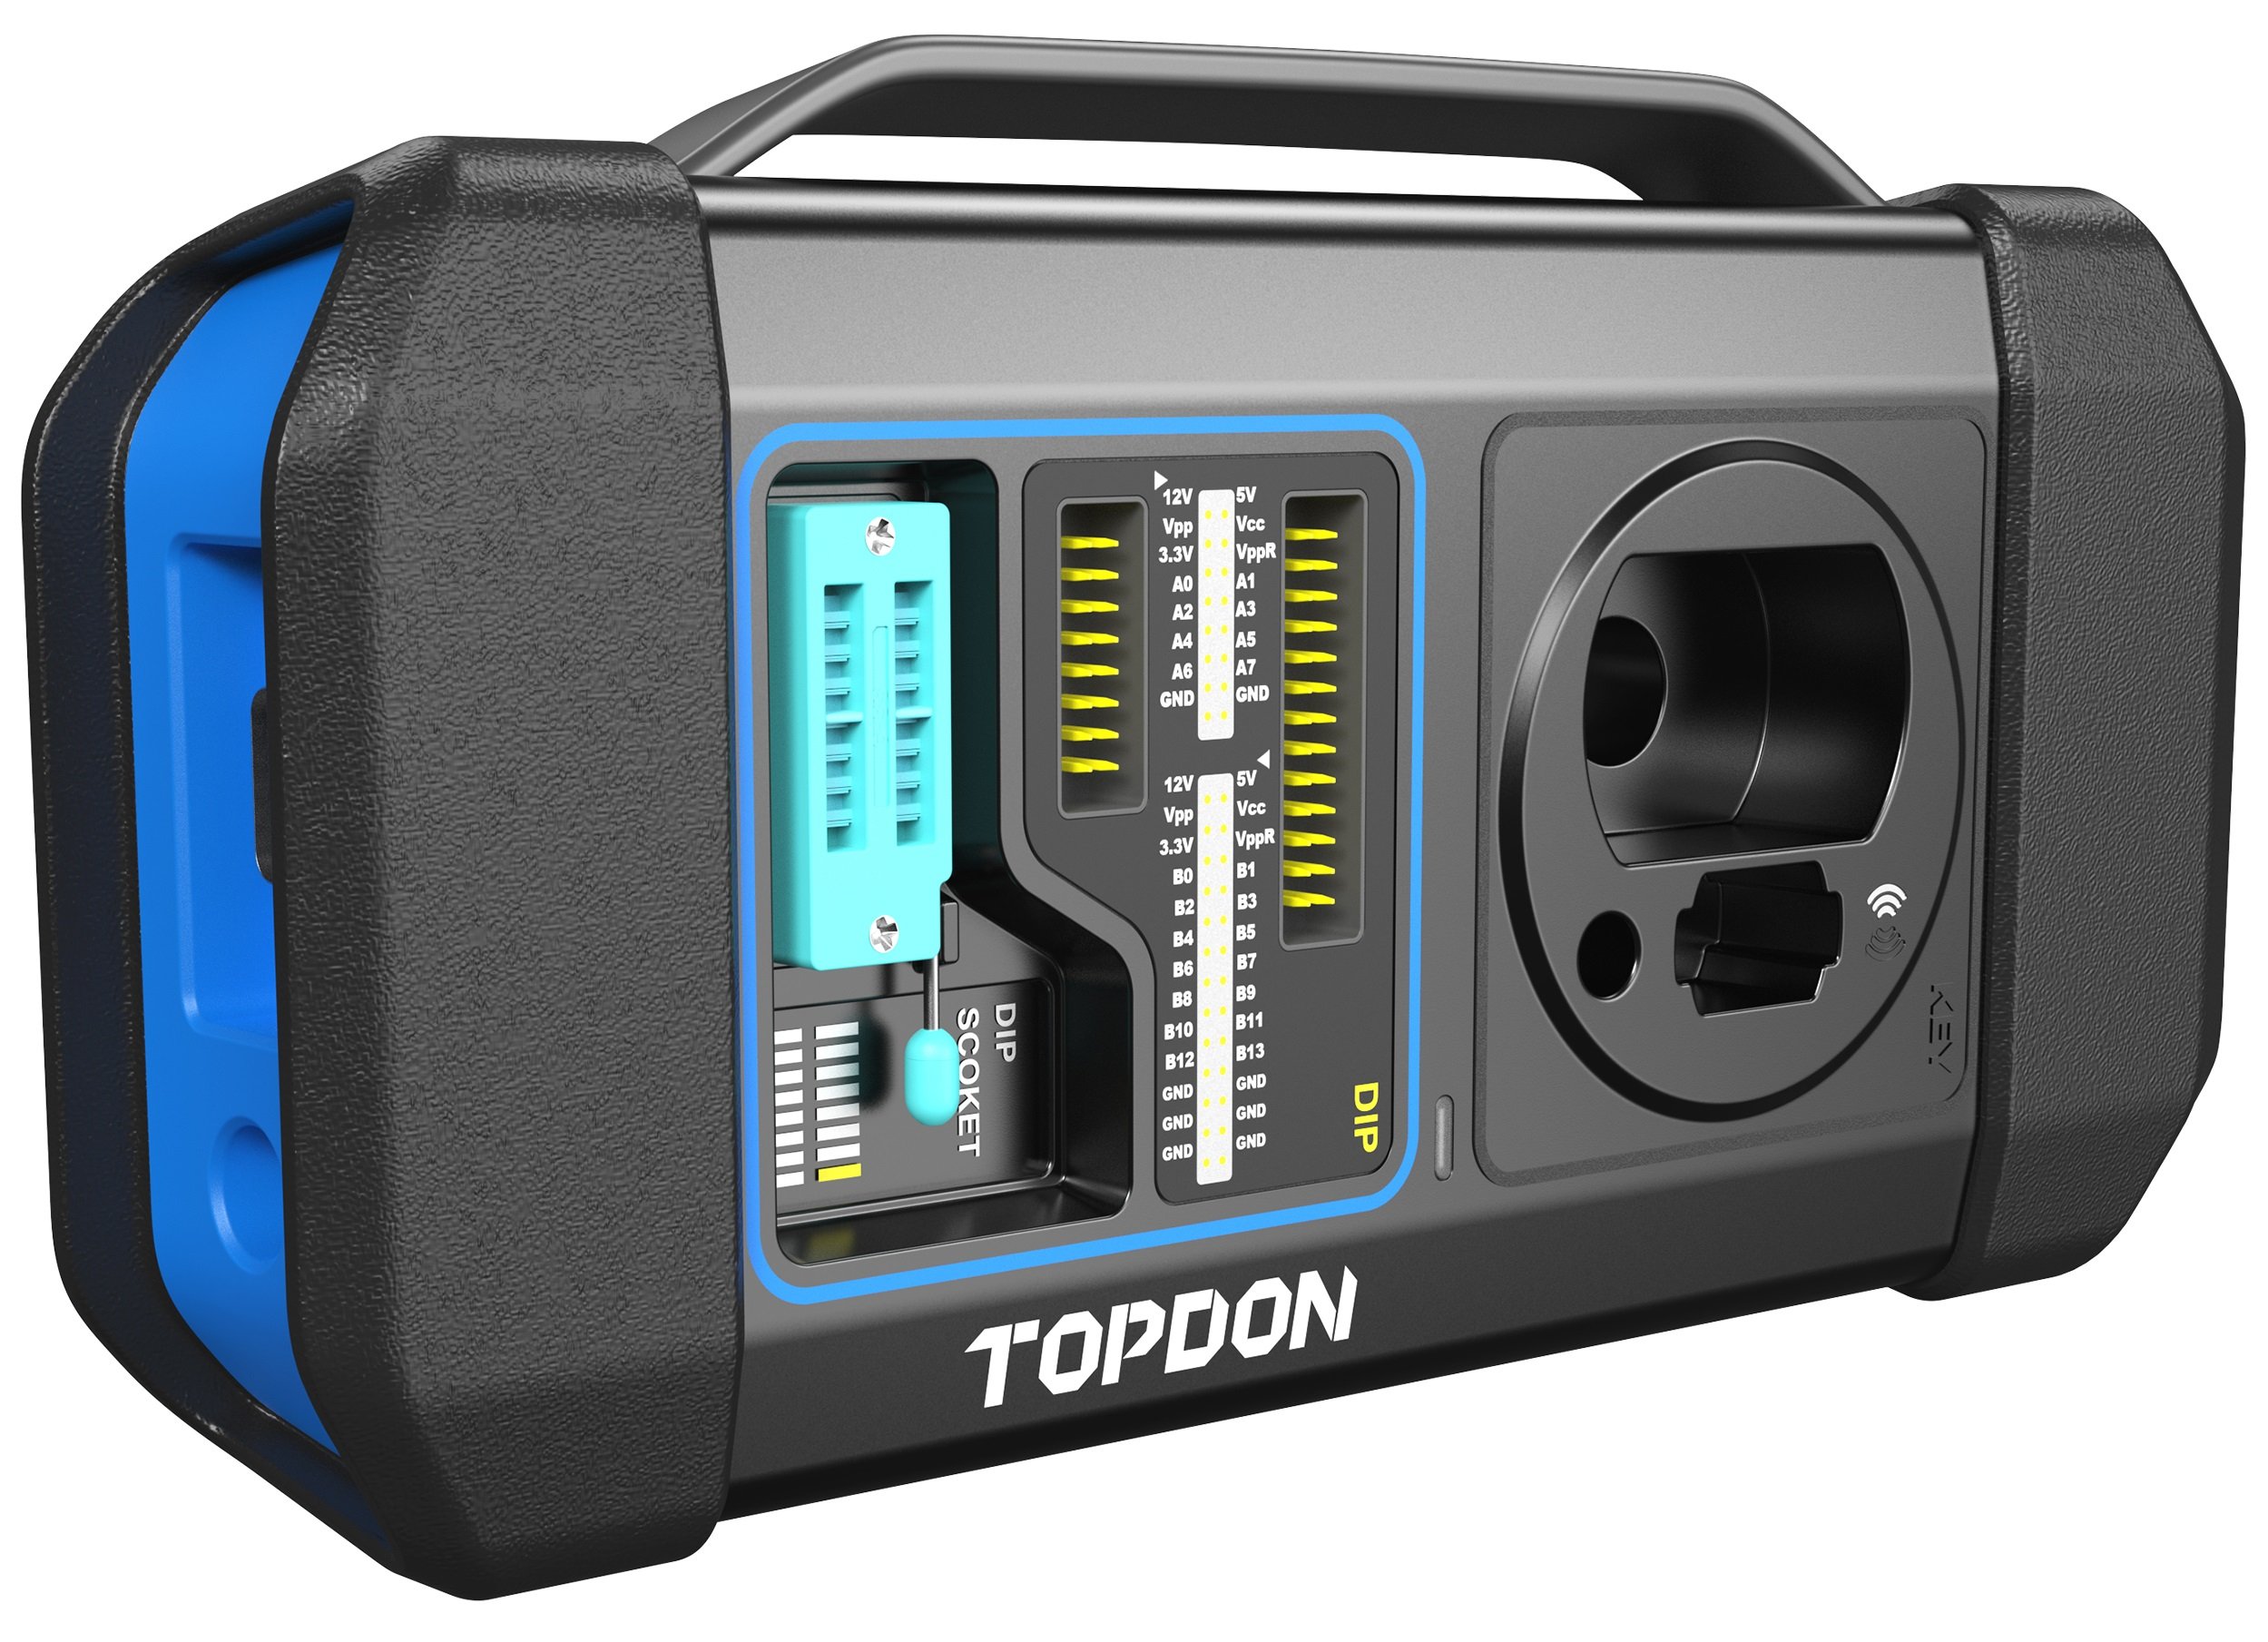  TOPDON Phoenix Plus Valise Diagnostique Voiture OBD2 Bluetooth  Bidirectionnel - Outil Diagnostic Auto pour Tous Les Systèmes avec Codage  ECU, Test Actif, RAZ du Vidange, ABS, SAS, BMS, TPMS, FAP